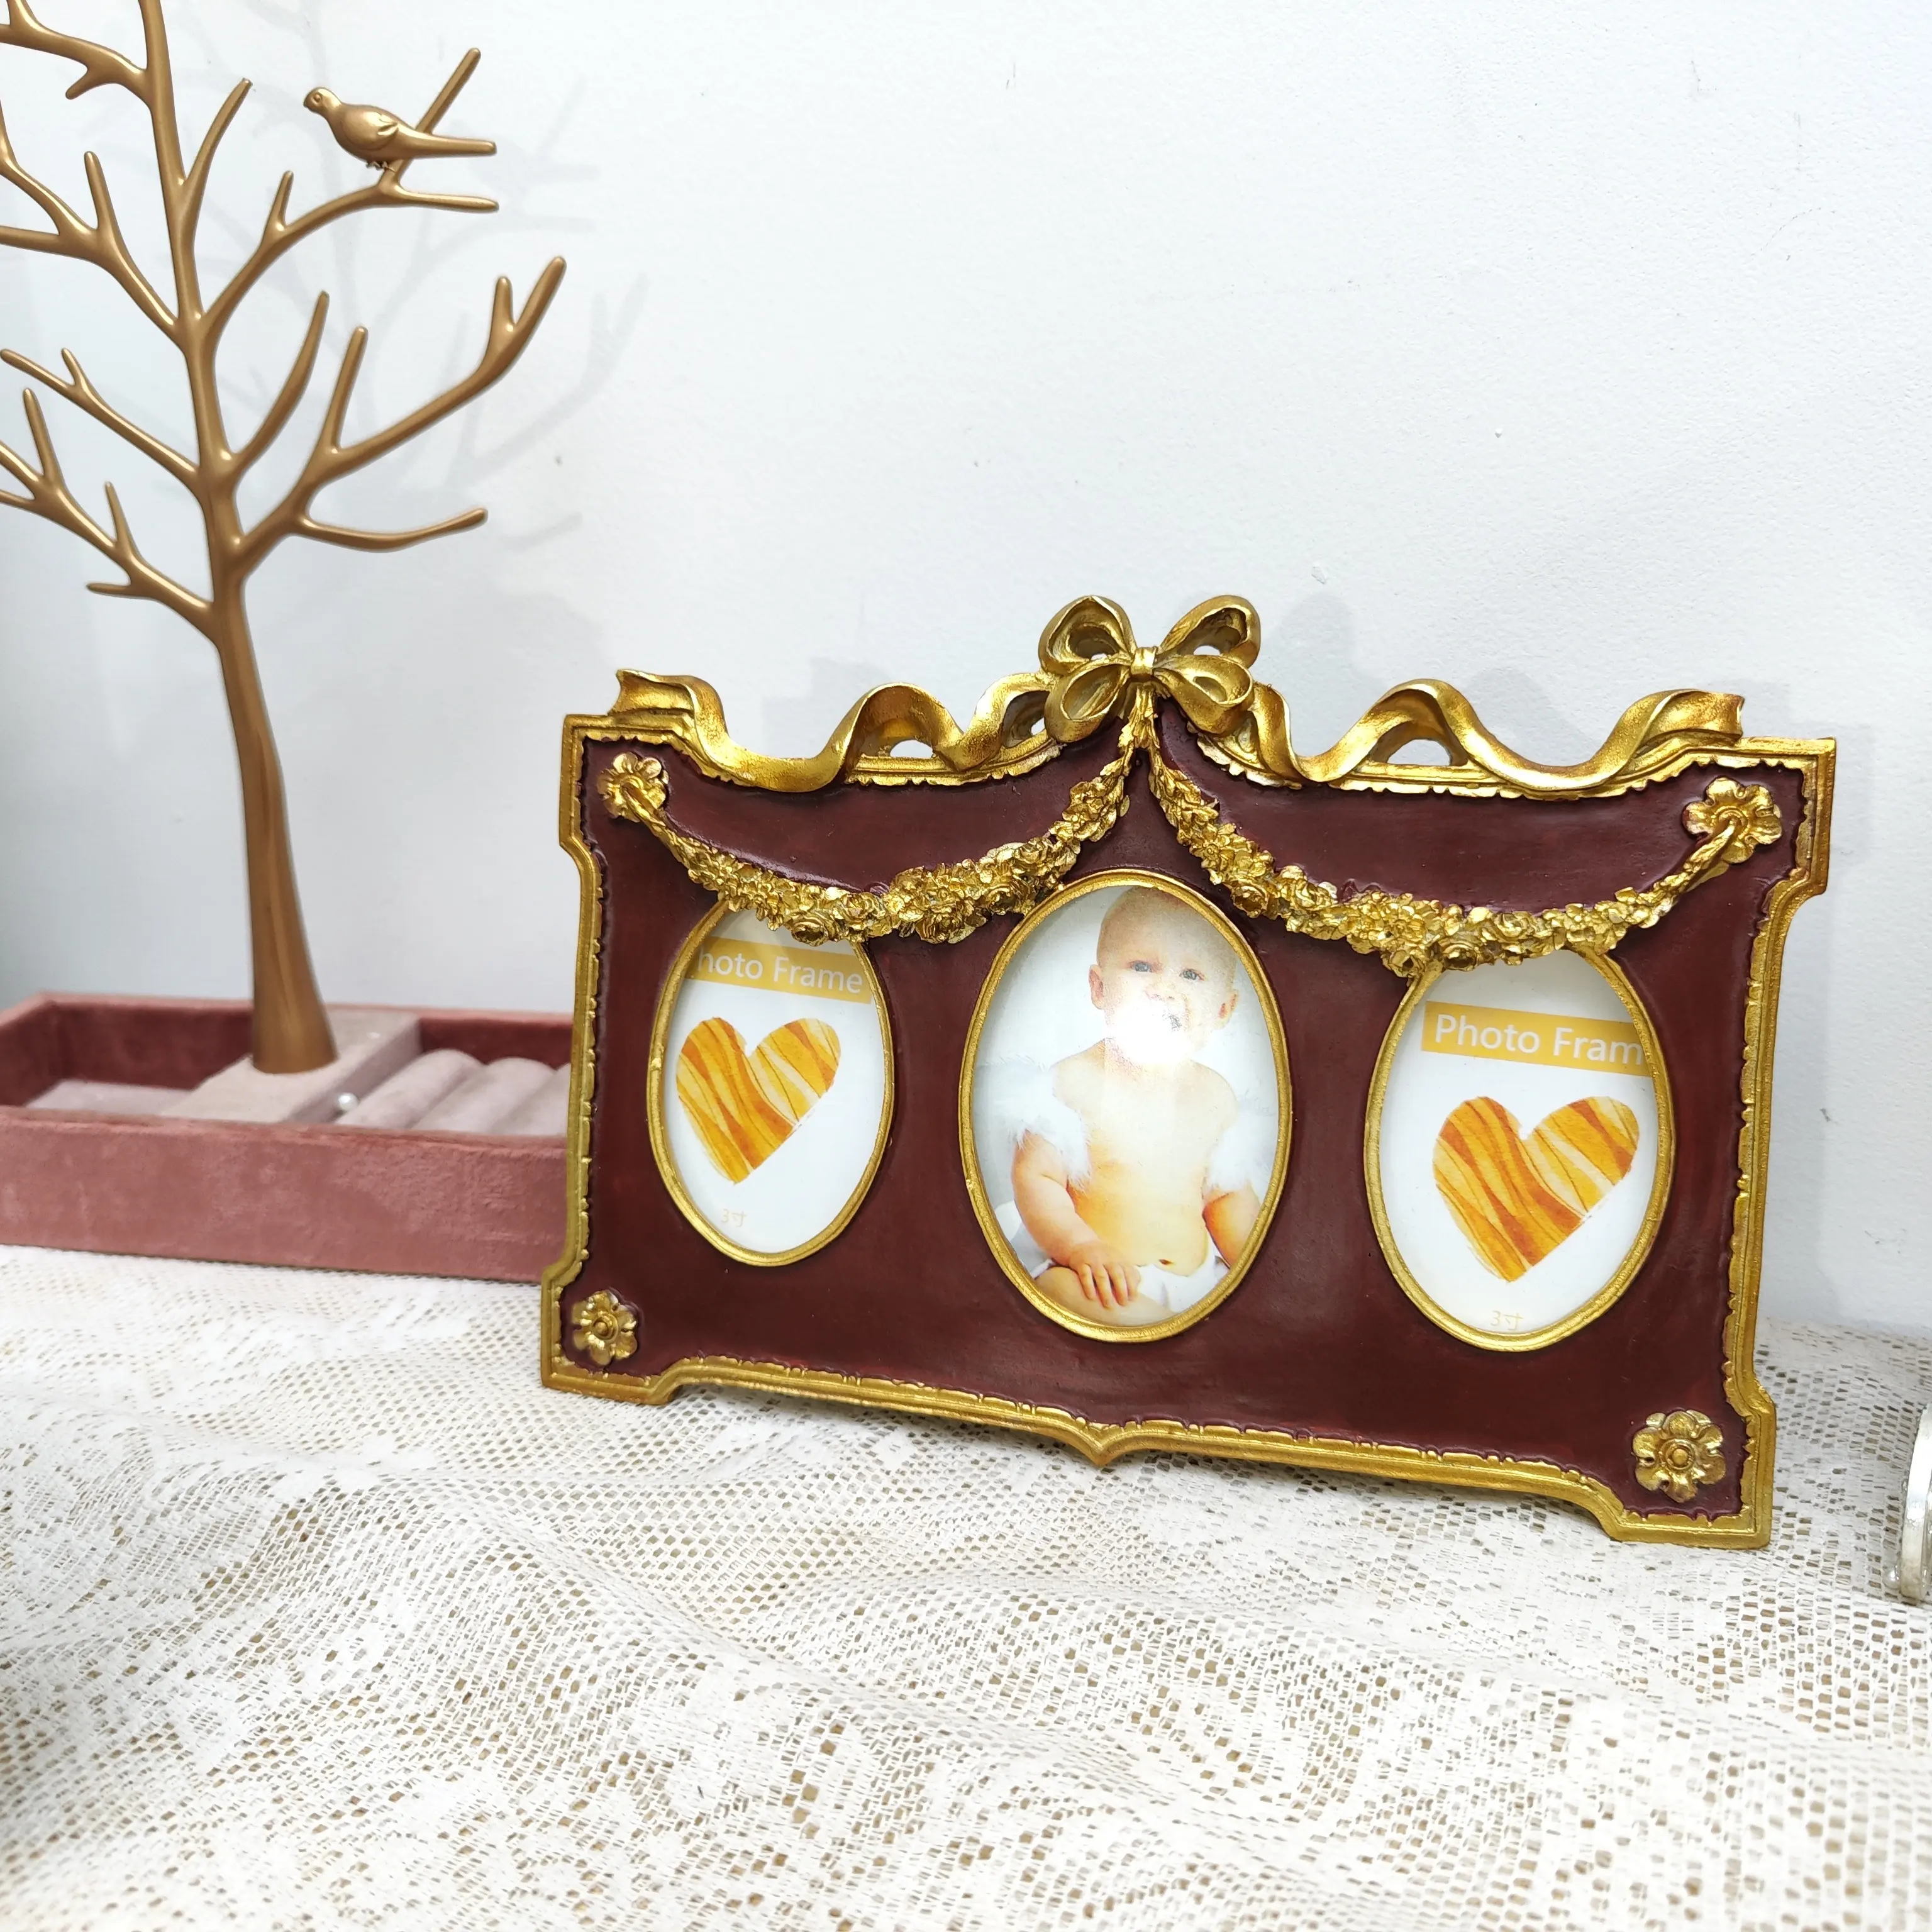 Marco de fotos de resina, marco de fotos de 3 pulgadas y 6 pulgadas con marco de combinación de oro vintage de estilo barroco, decoración del hogar